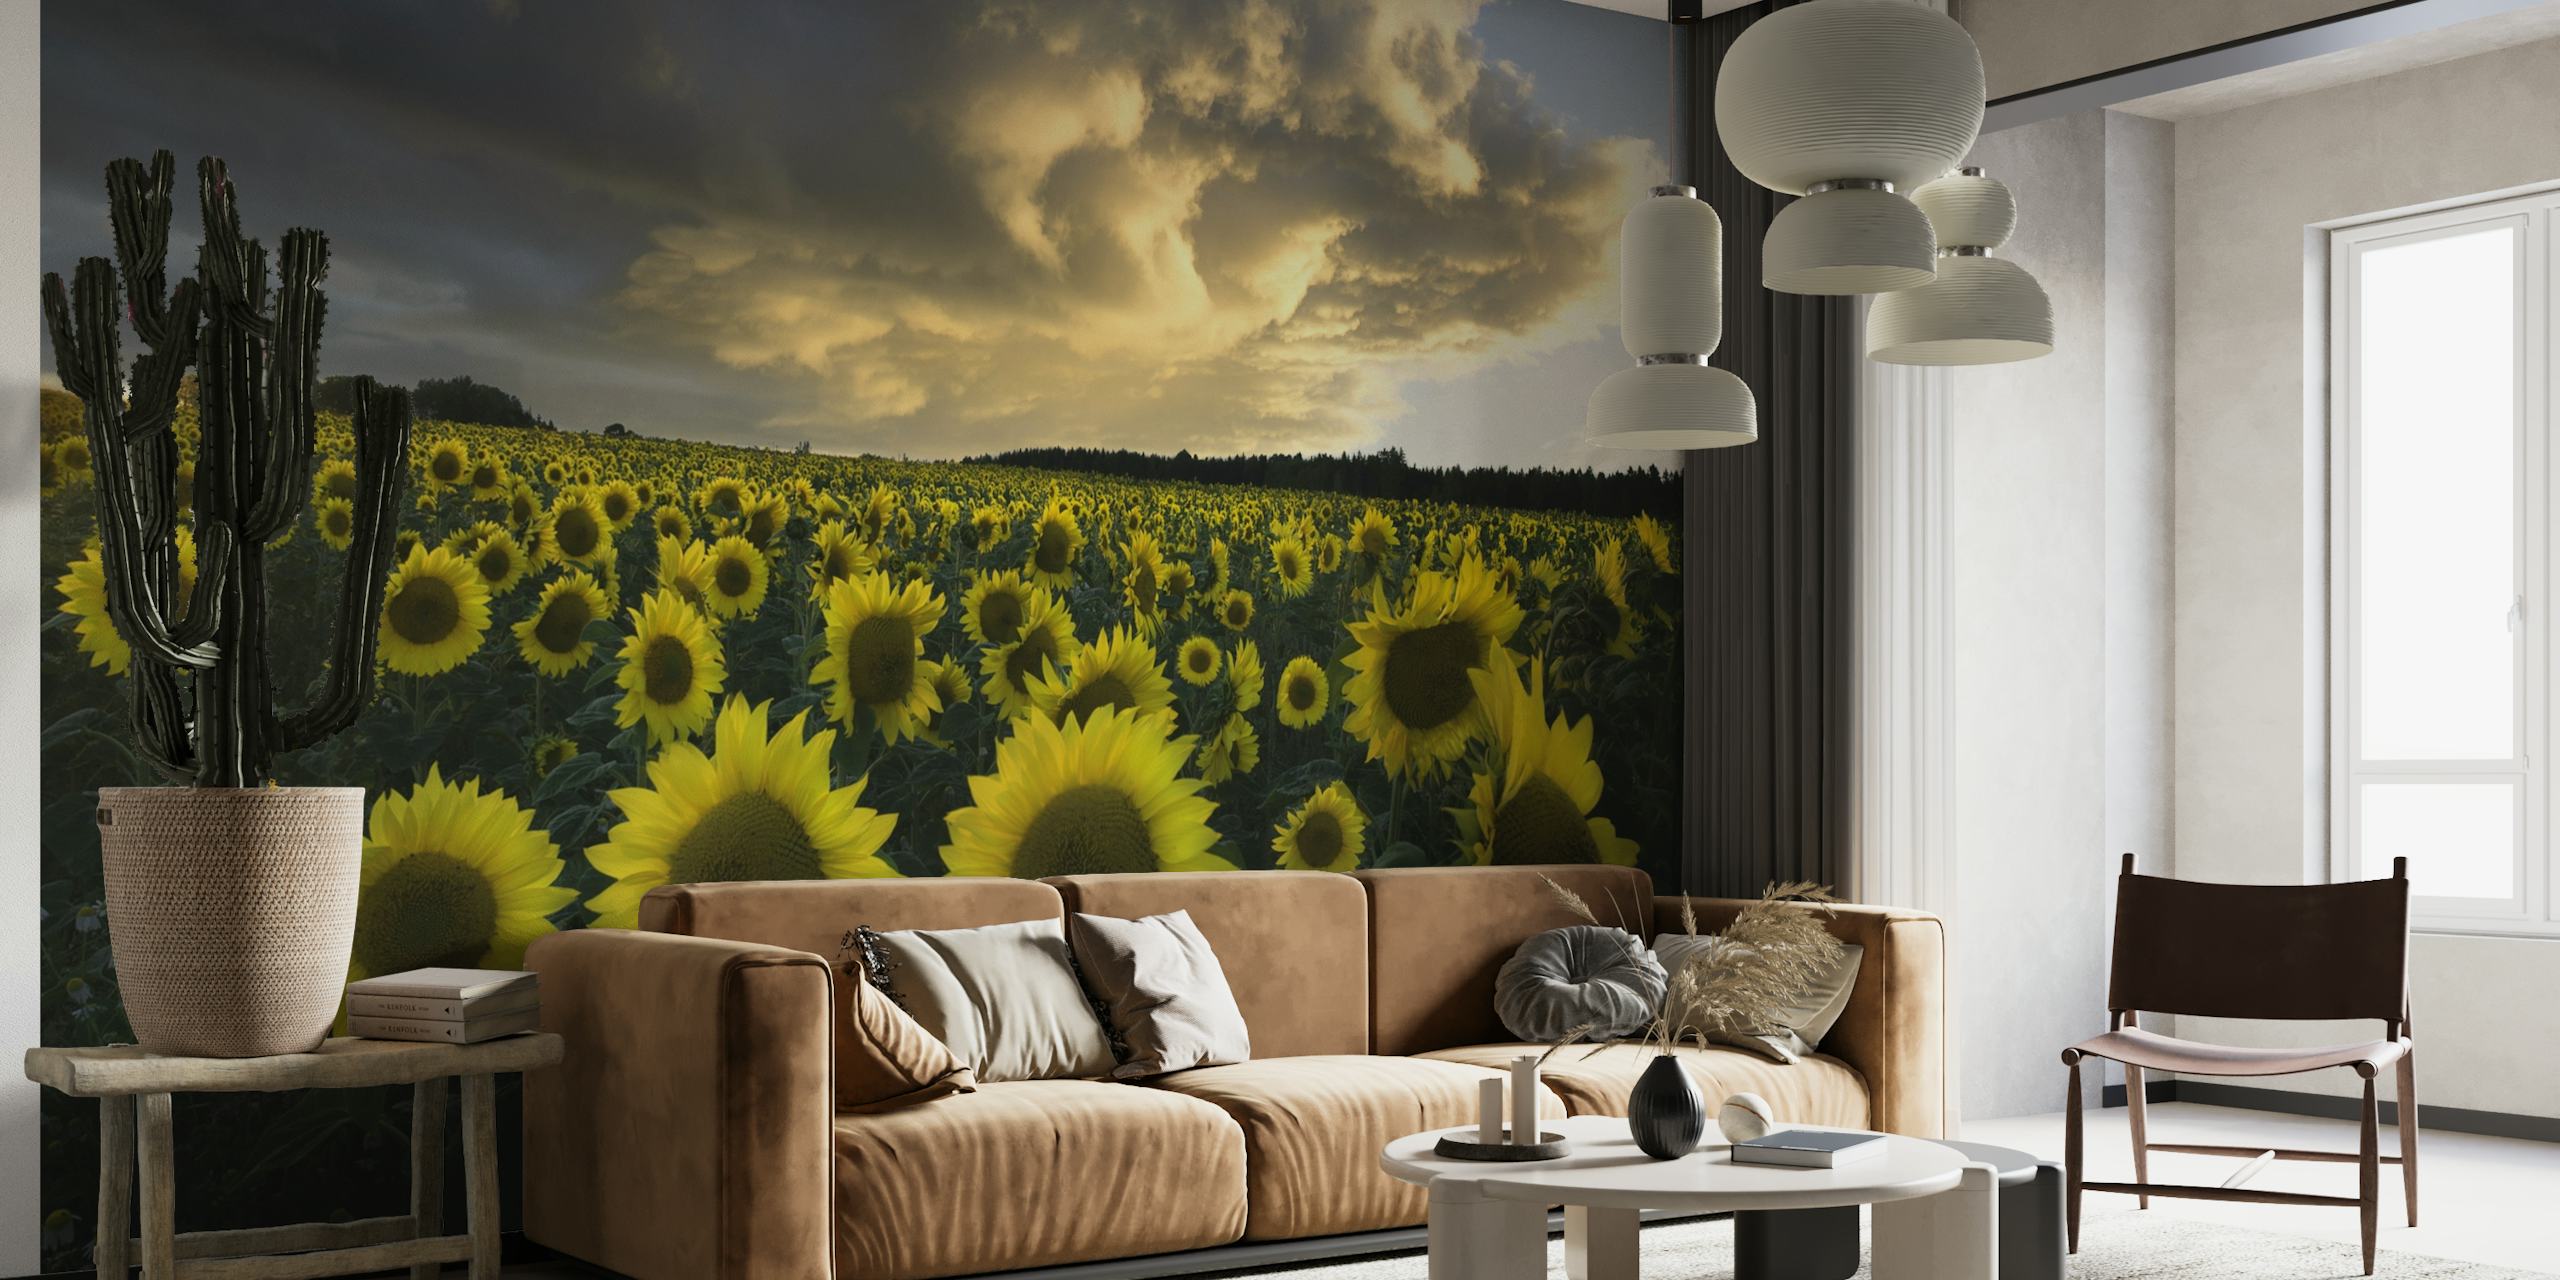 Mural de parede de girassóis na Suécia mostrando um campo de girassóis florescendo sob um céu nublado